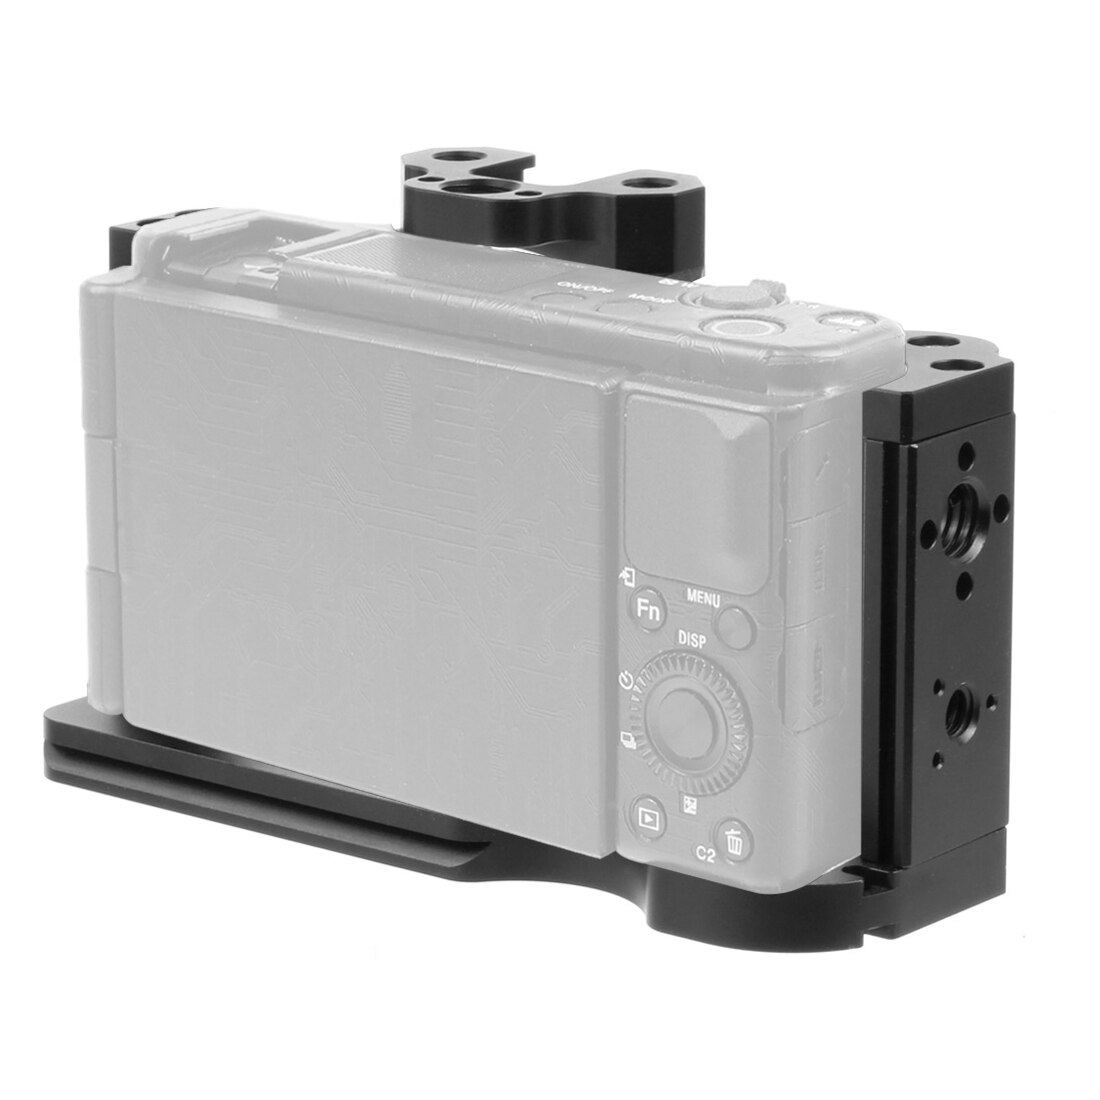 ZV1 Camera Kooi Grip Rig Voor Sony ZV1 Video Dslr Stabilizer Uitbreiding Beugel Case Koude Schoen 1/4 3/8 Arri Mount vlogging Statief